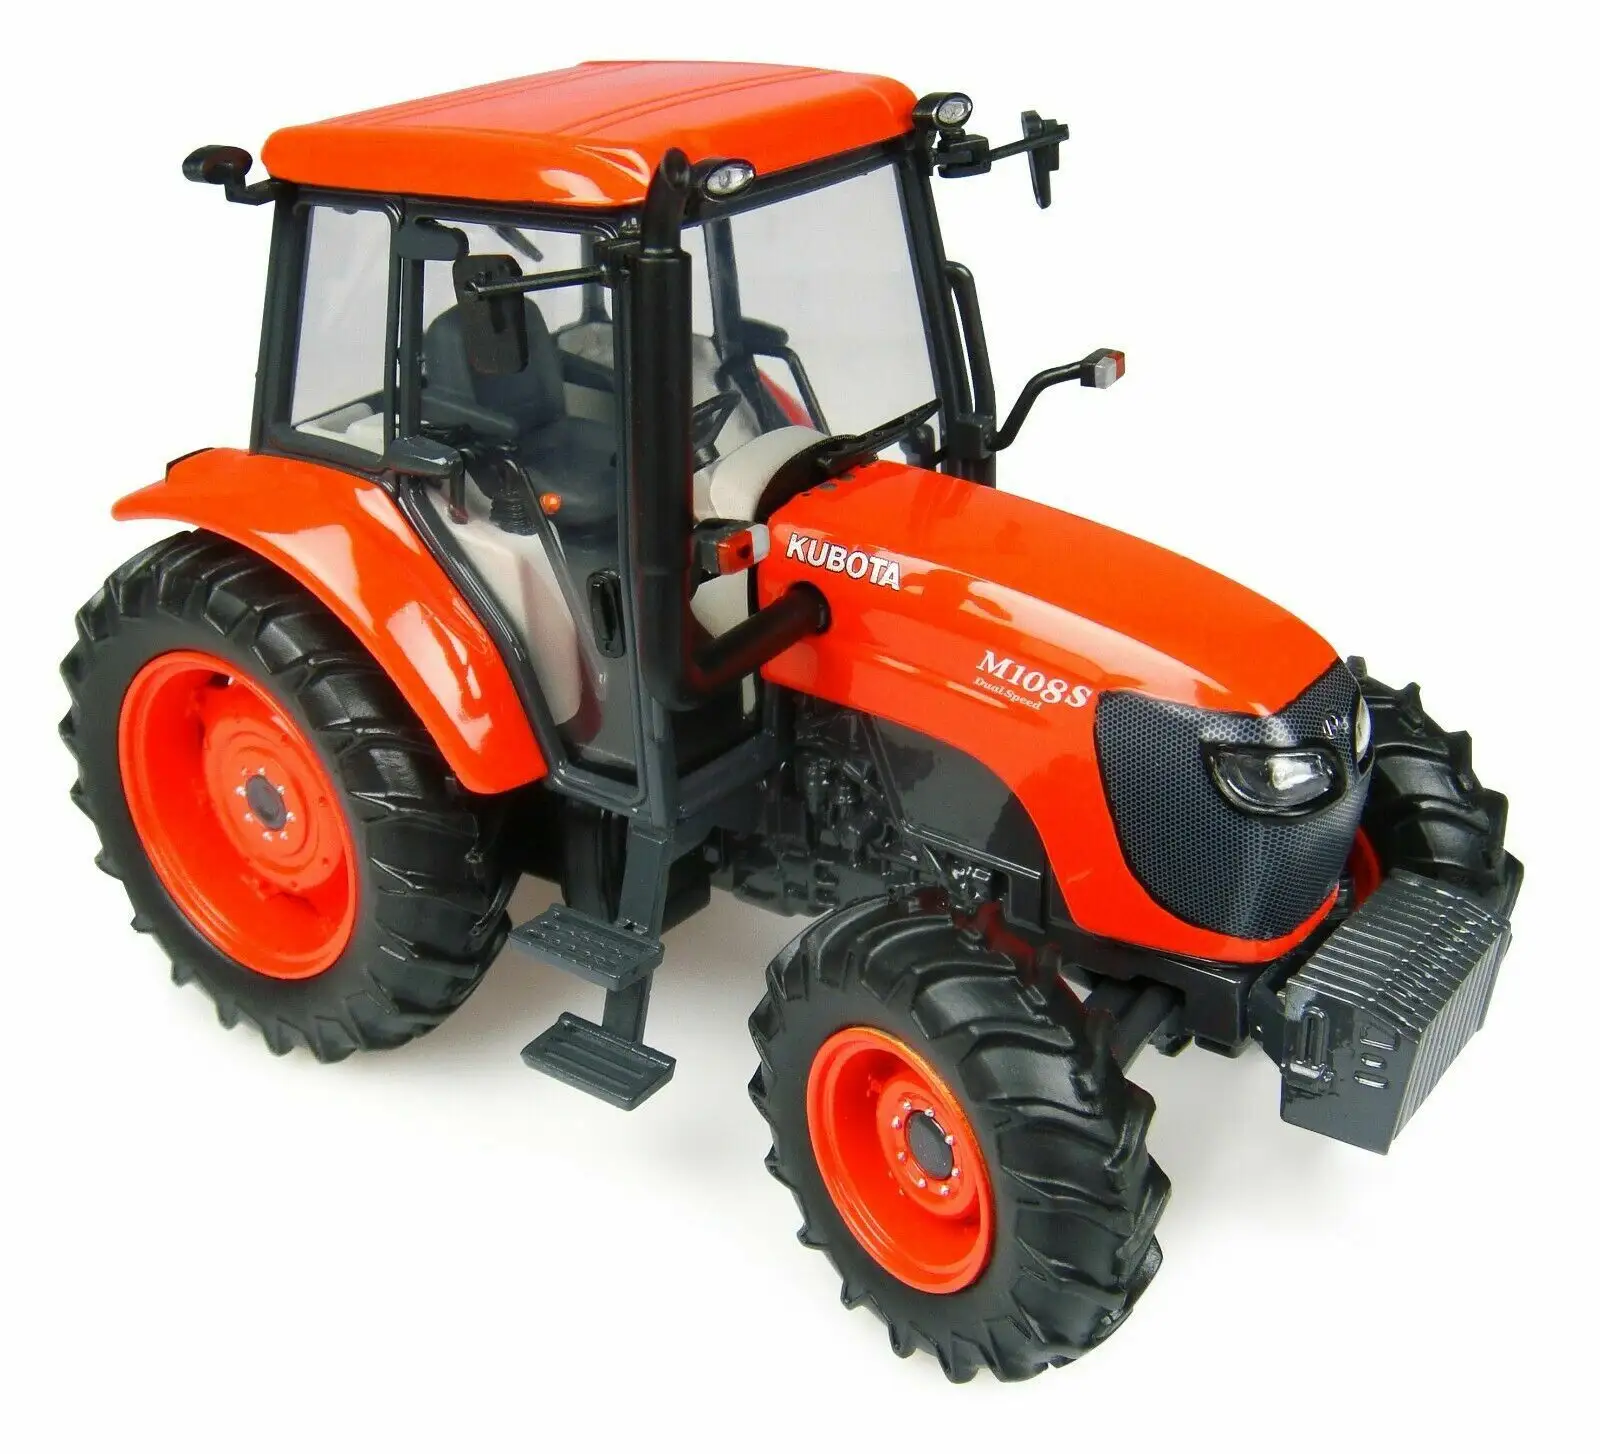 Sıcak satış kullanılmış traktör kutractor M954 4wd tekerlek tarım ekipmanları traktör